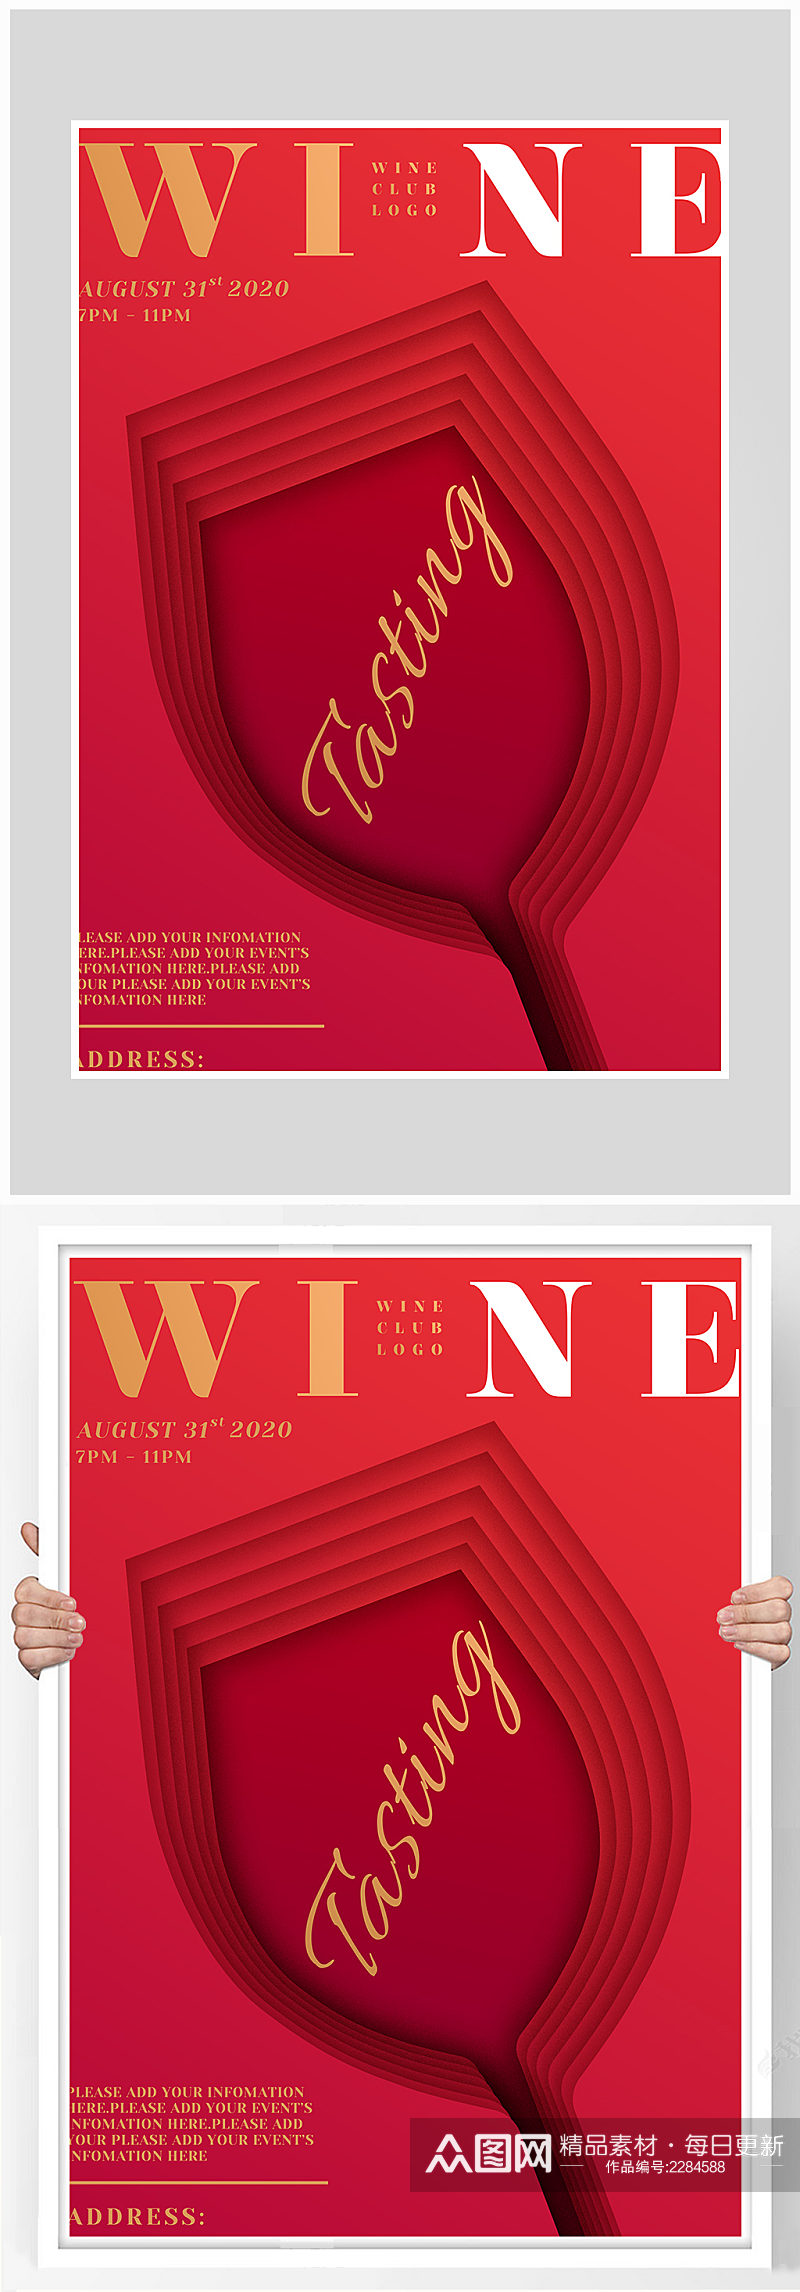 创意质感红酒促销打折简约海报设计素材